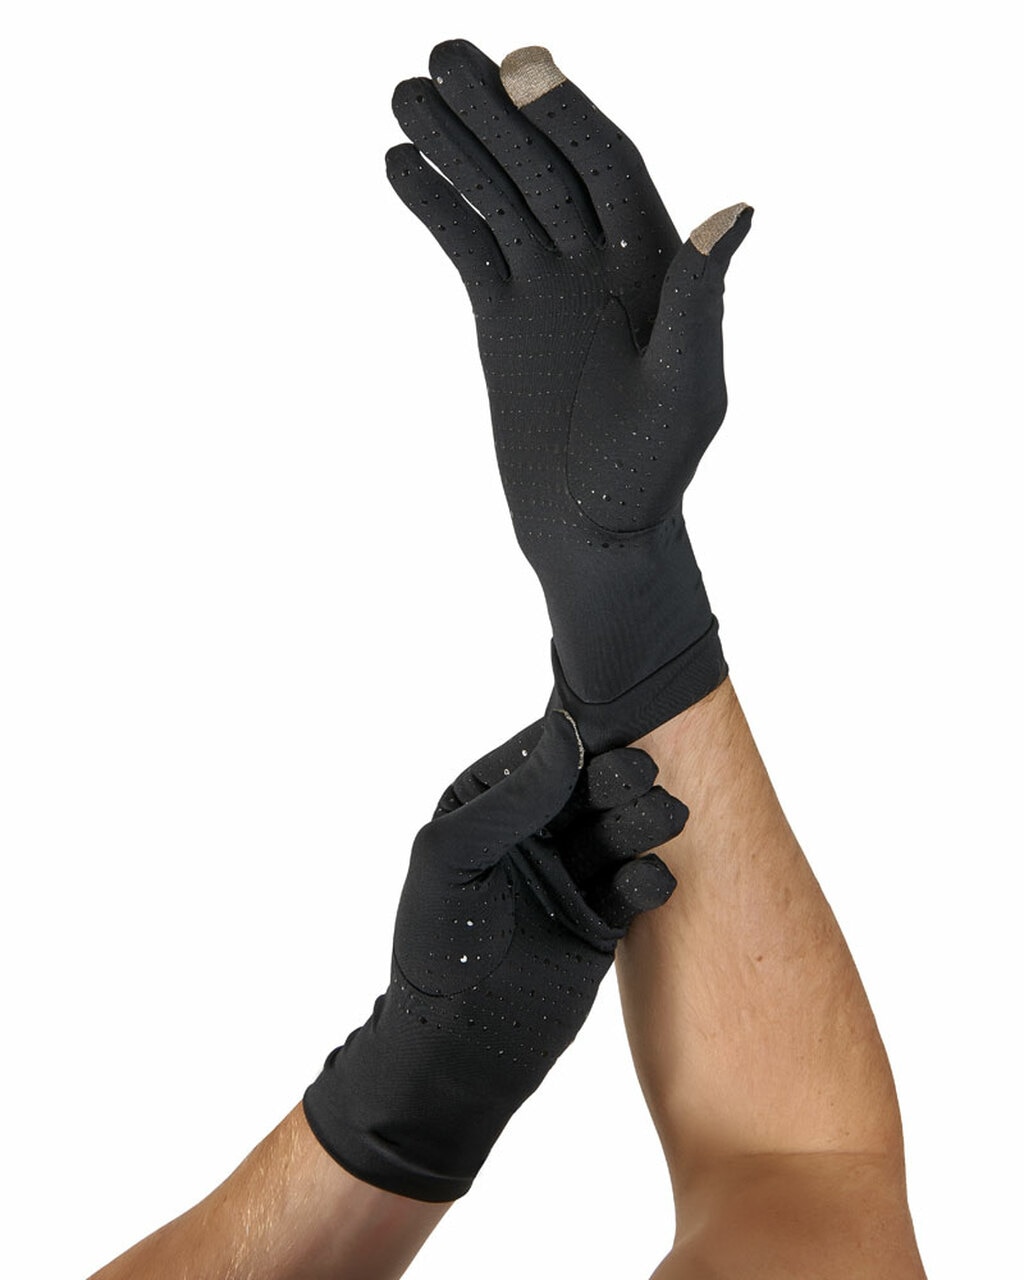 Tommie Copper Men's Full Finger Compression Gloves, Black